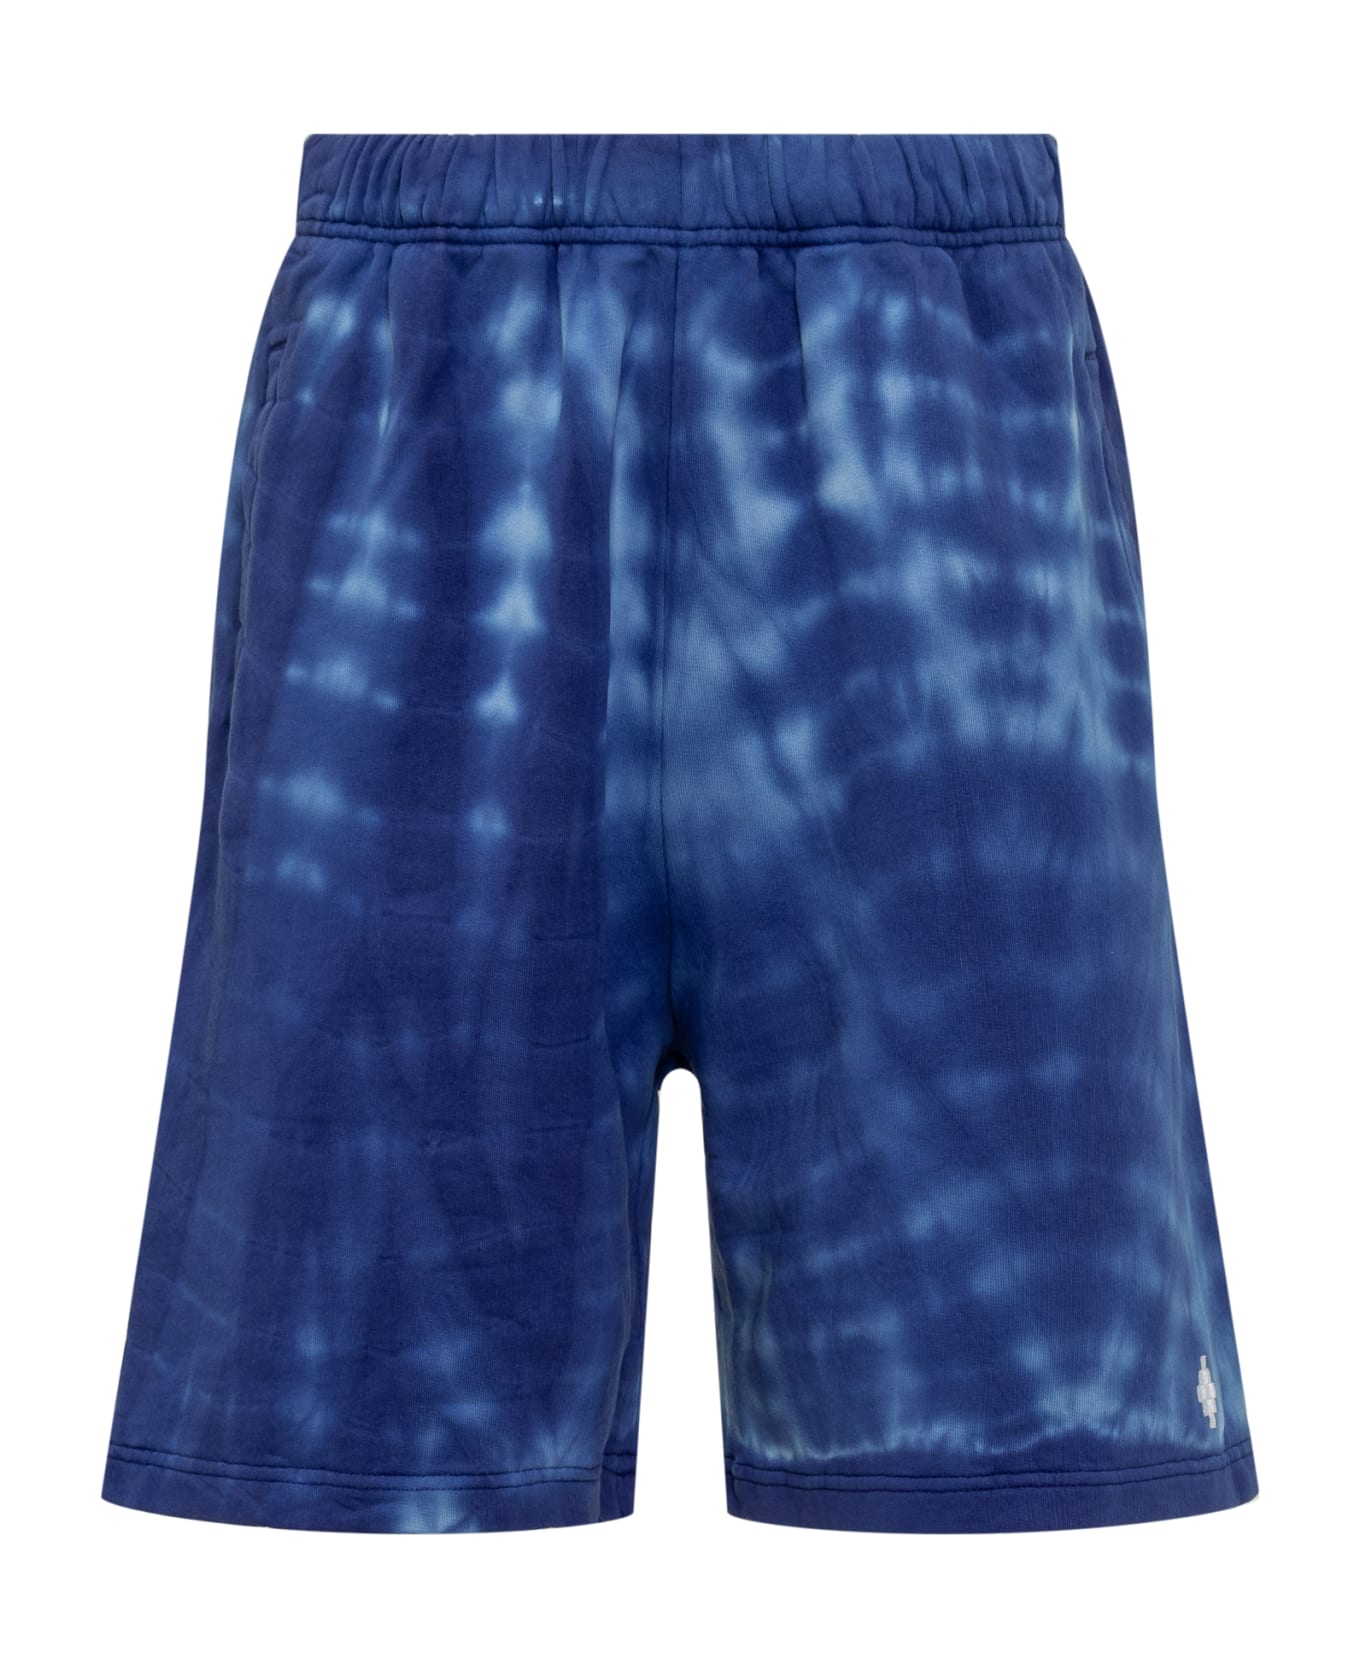 Marcelo Burlon Soundwaves Shorts - Blue